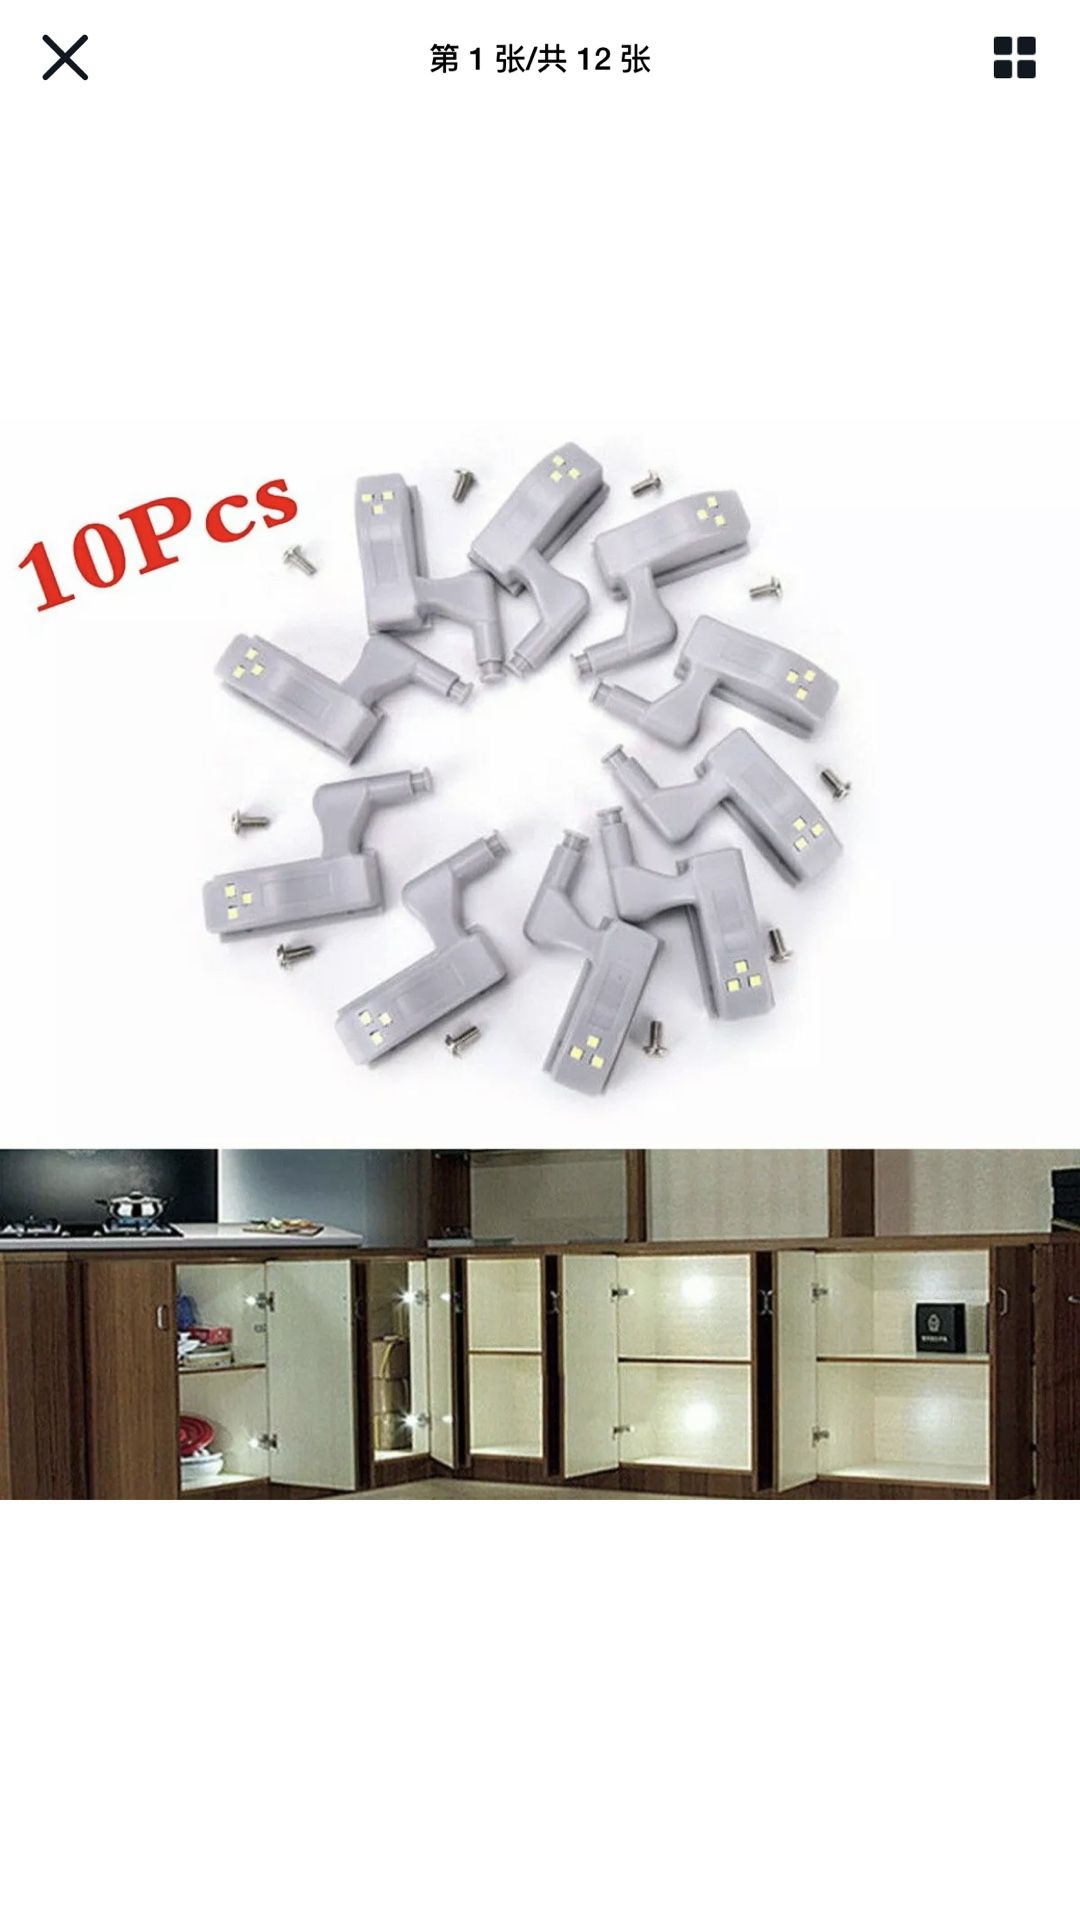 10 pcs LED Sensor Hinge Lights for Home Kitchen Cabinet Cupboard Closet Wardrobe